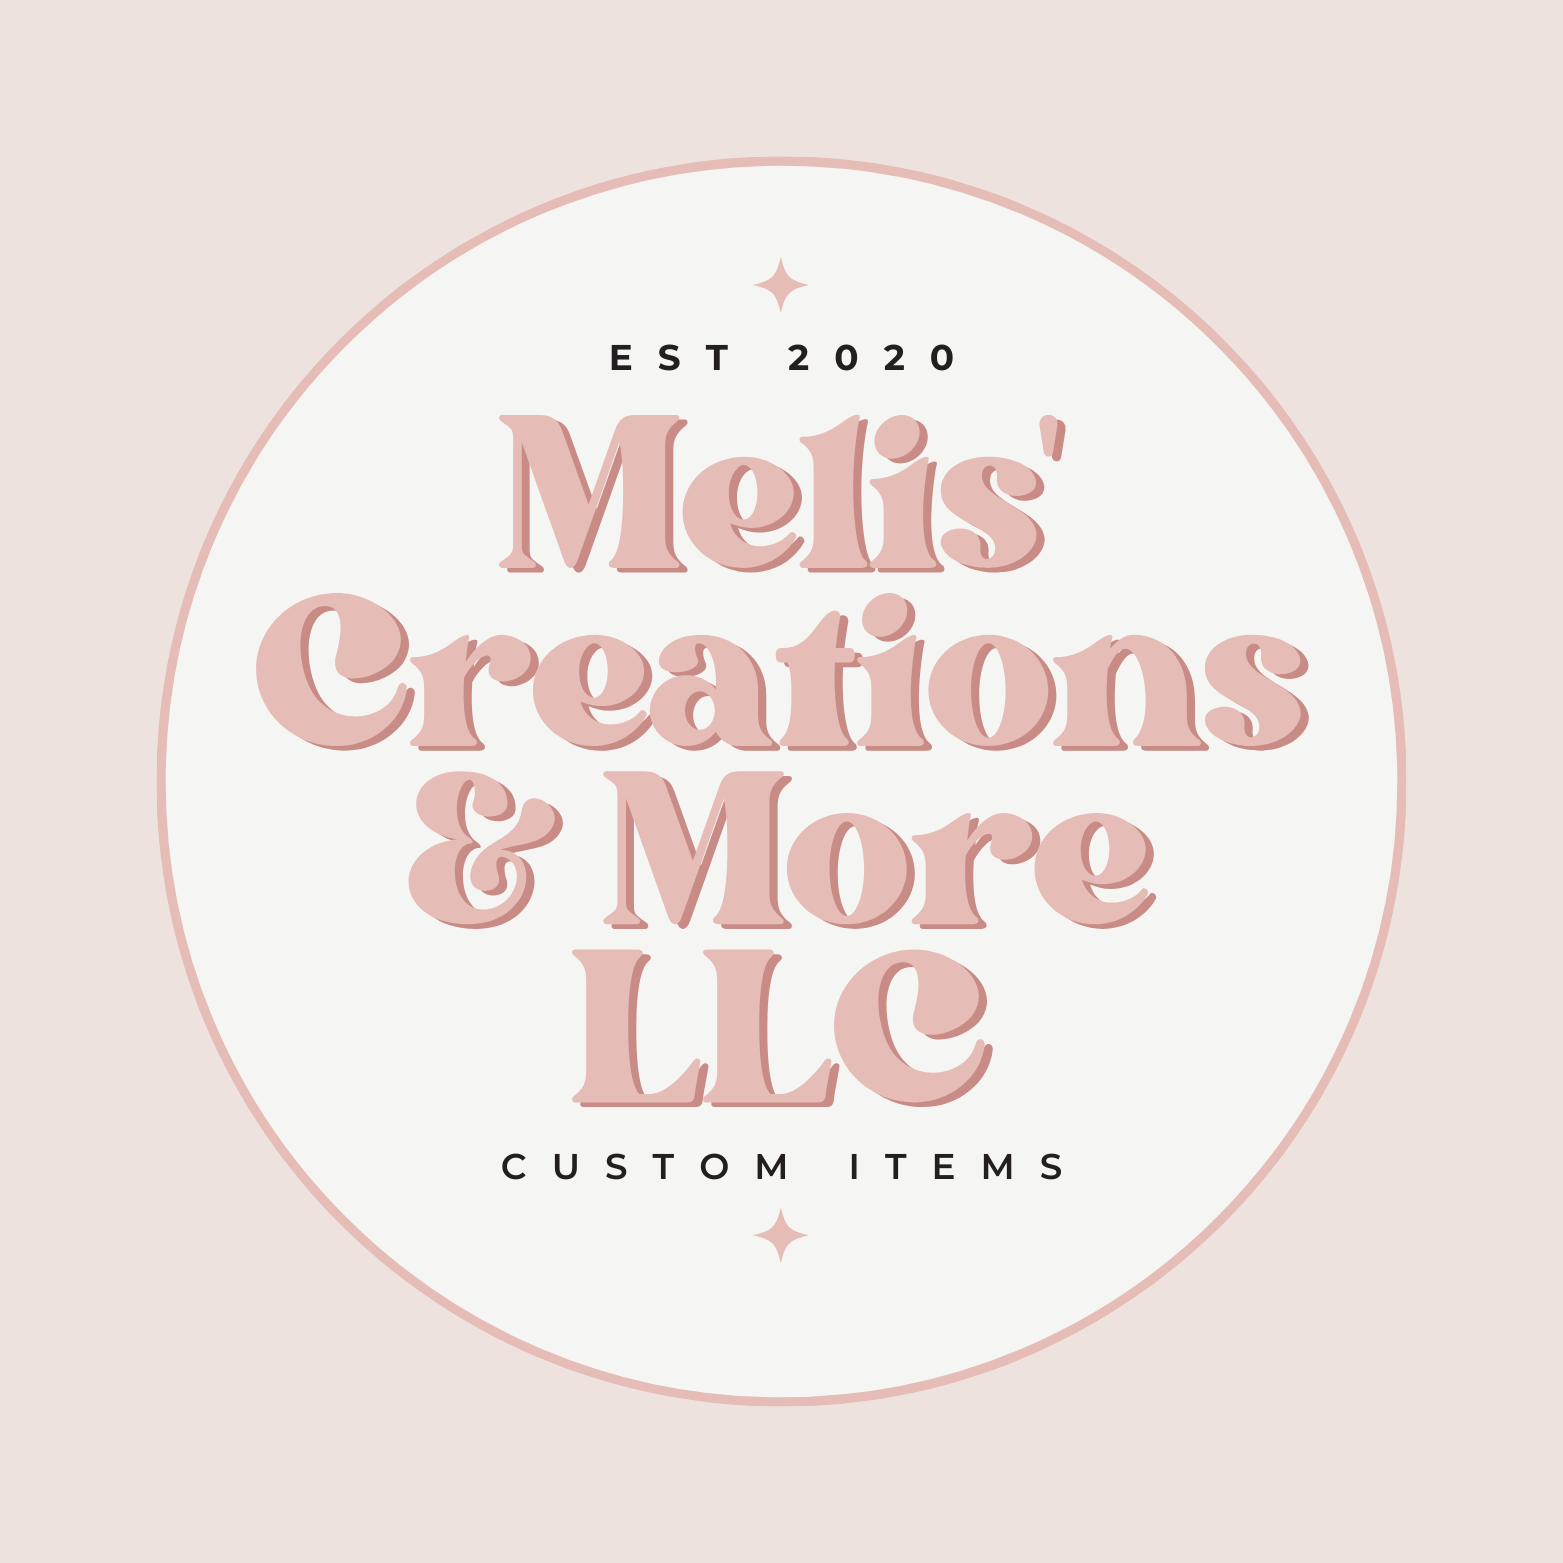 Melis' Creations & More – Melis' Creations & More